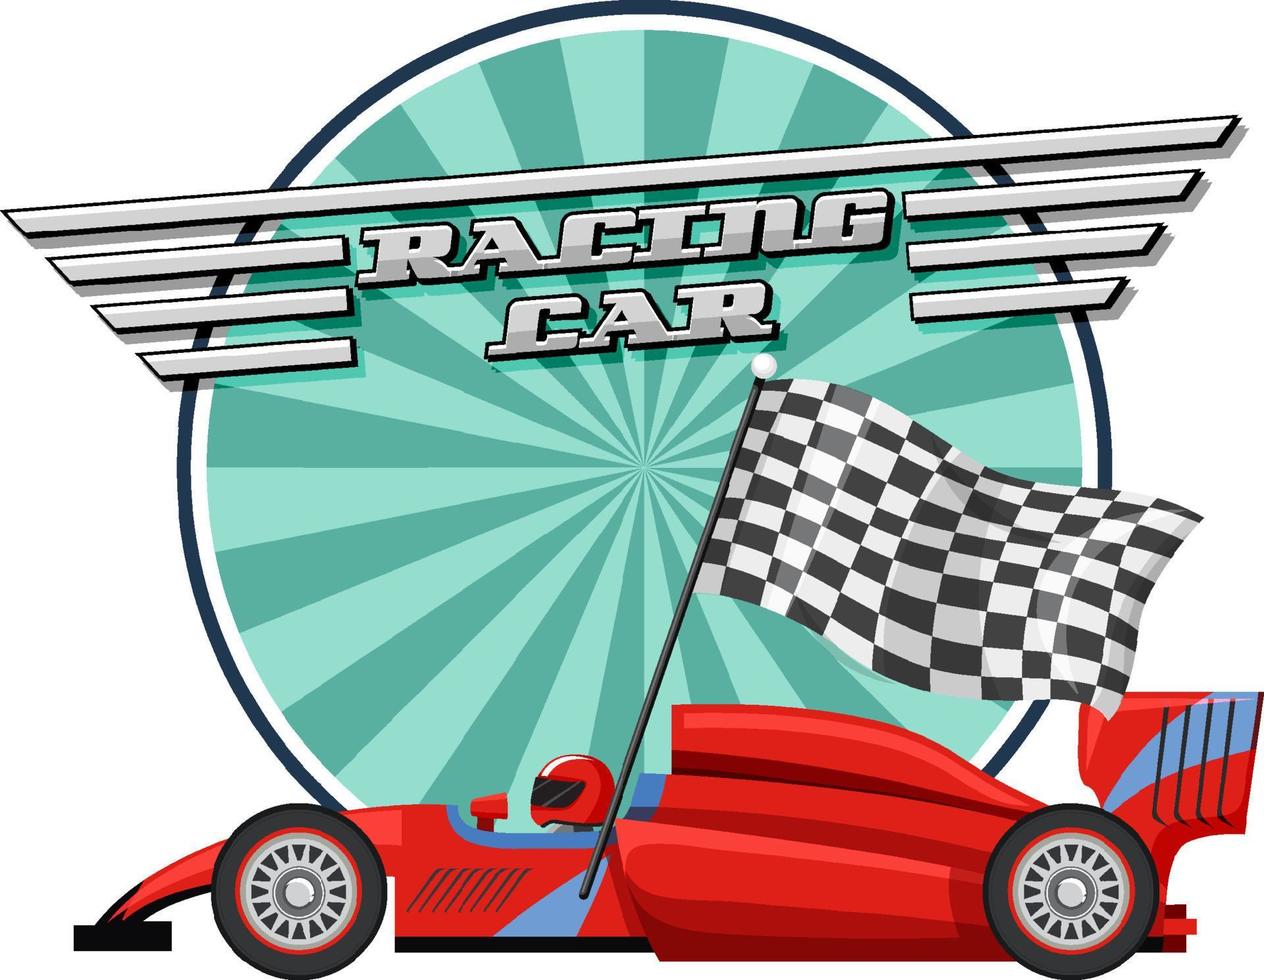 racewagen logo met racewagen op witte achtergrond vector